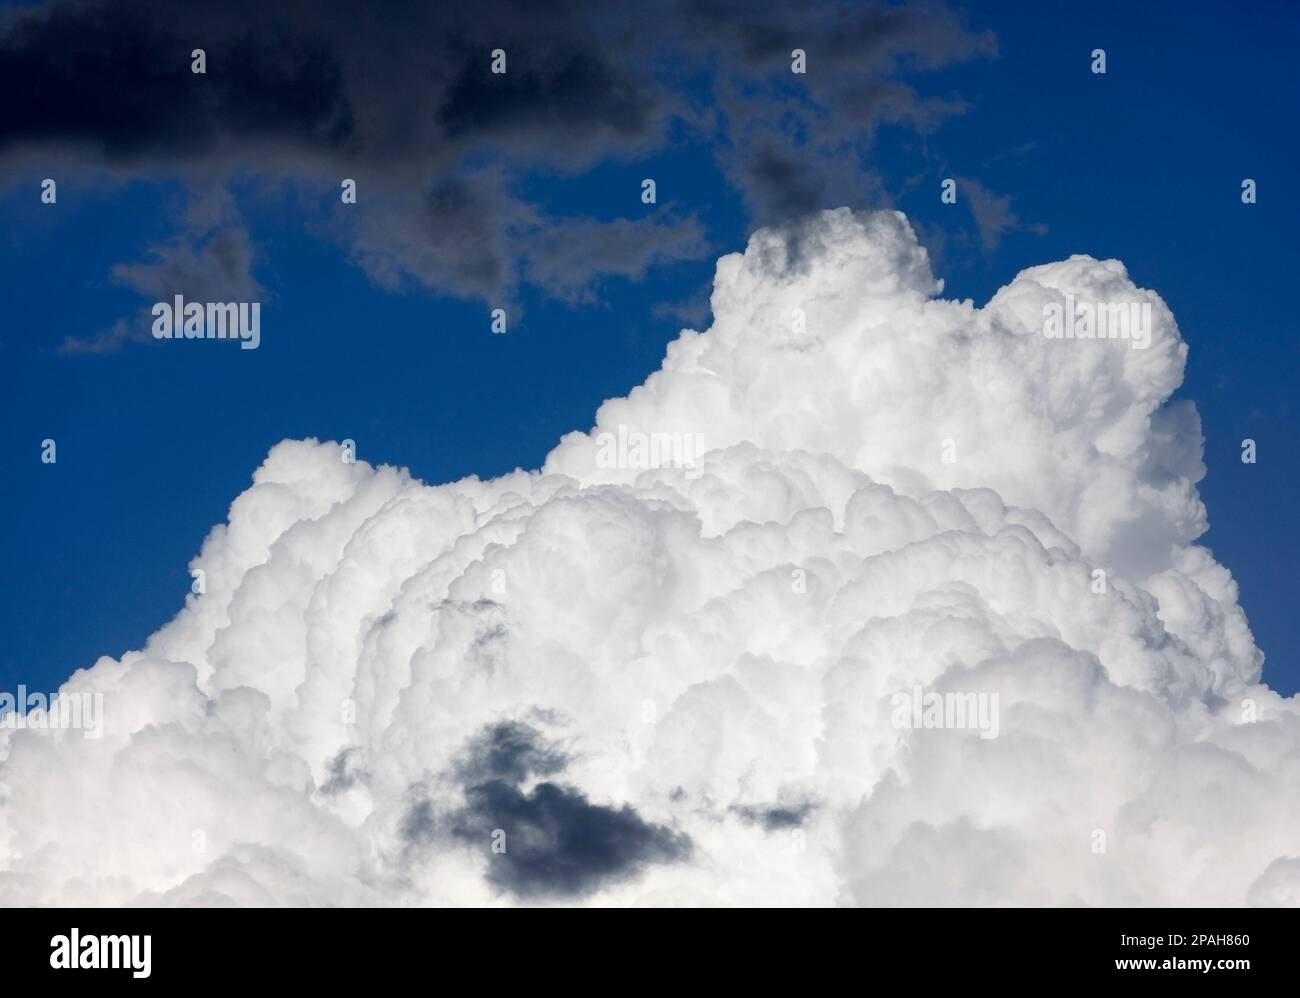 Dunkelgraue Sturmwolken, die sich am sonnigen blauen Himmel in Kanada in Richtung weißer Cumuluswolken bewegen Stockfoto